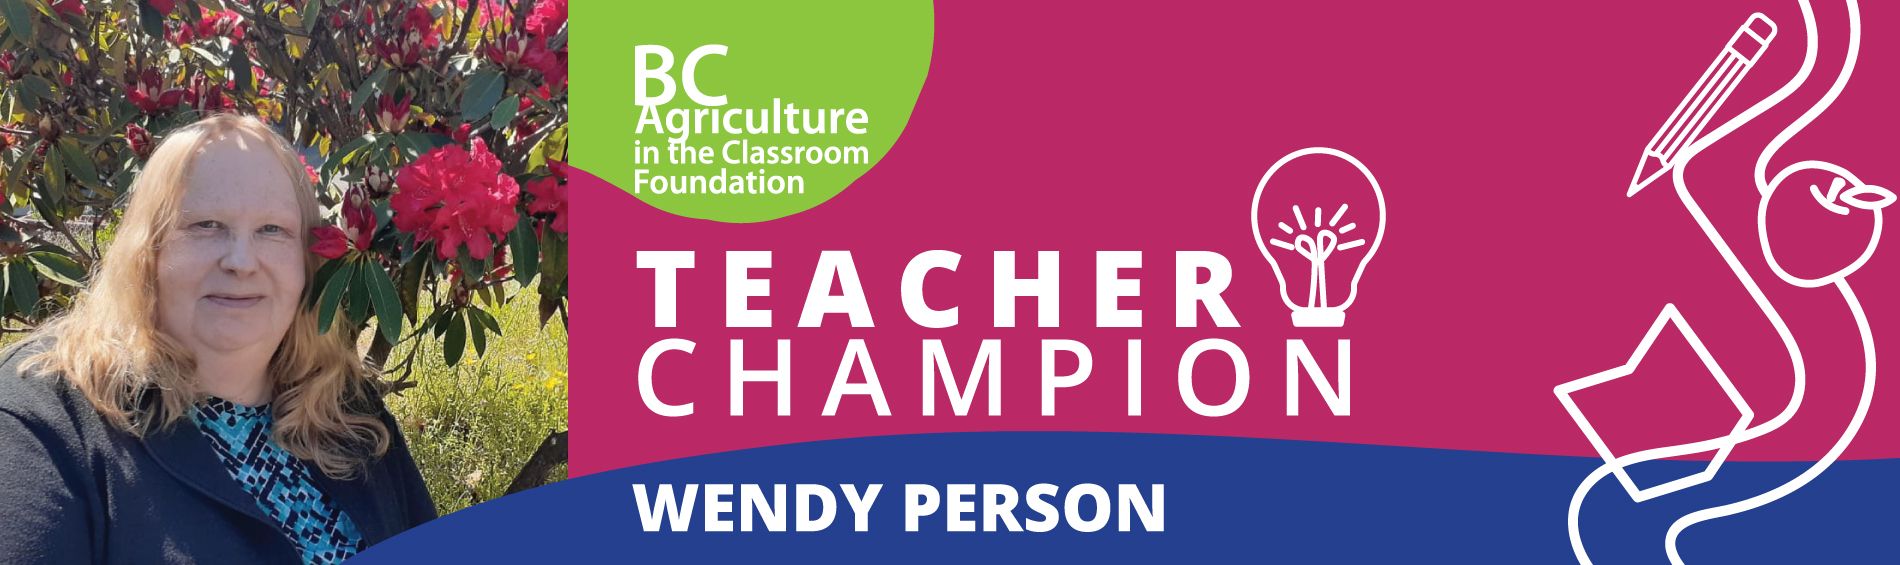 Wendy Person - Teacher Champion